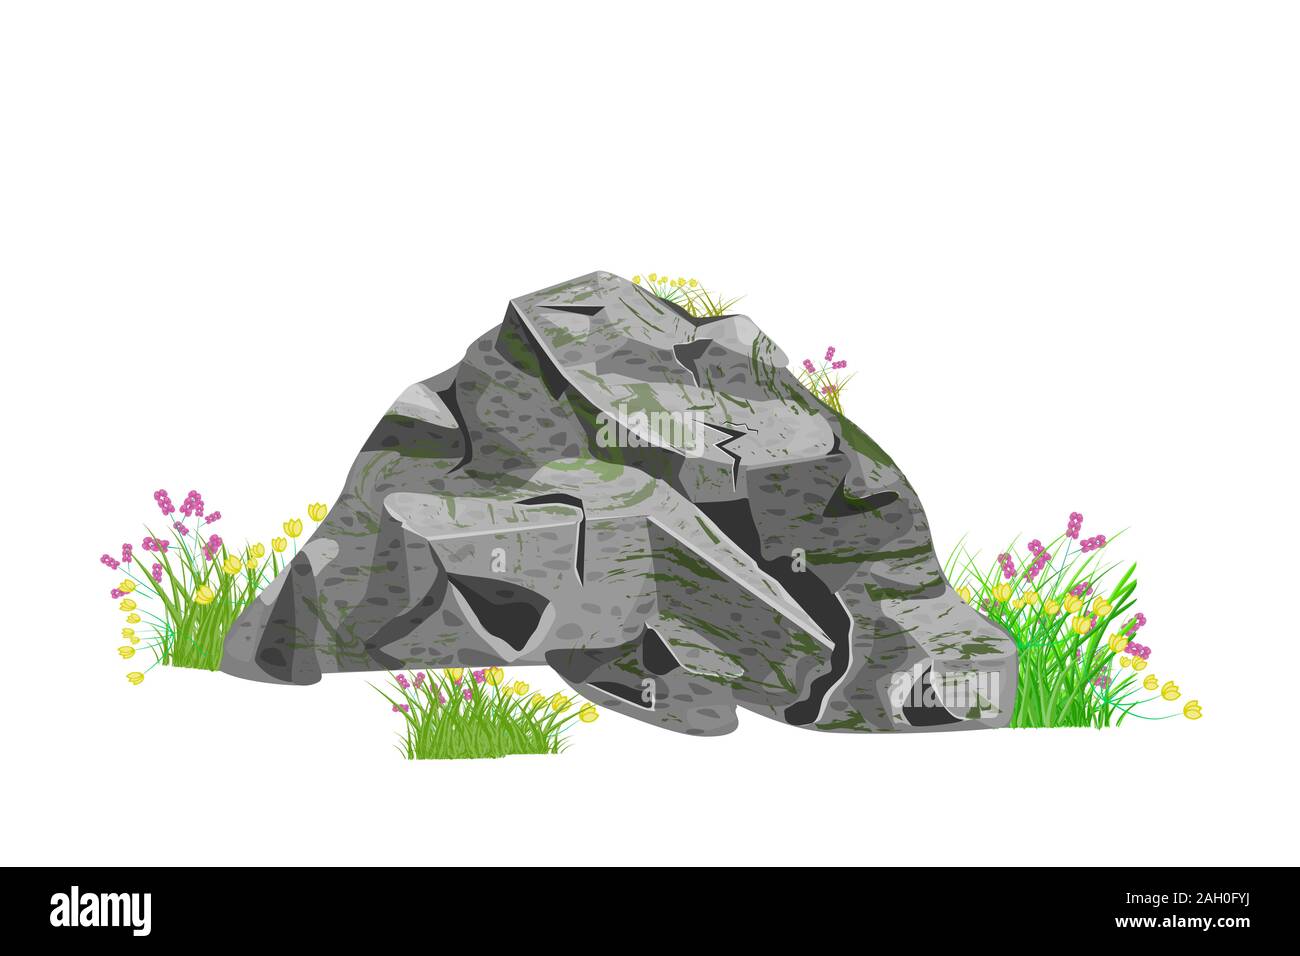 Steine und Gras auf weißem Hintergrund. Cartoon grau Boulder oder Rock mit Gras und Blumen. Park oder Garten, Landschaftselemente. Vektor Stock Vektor